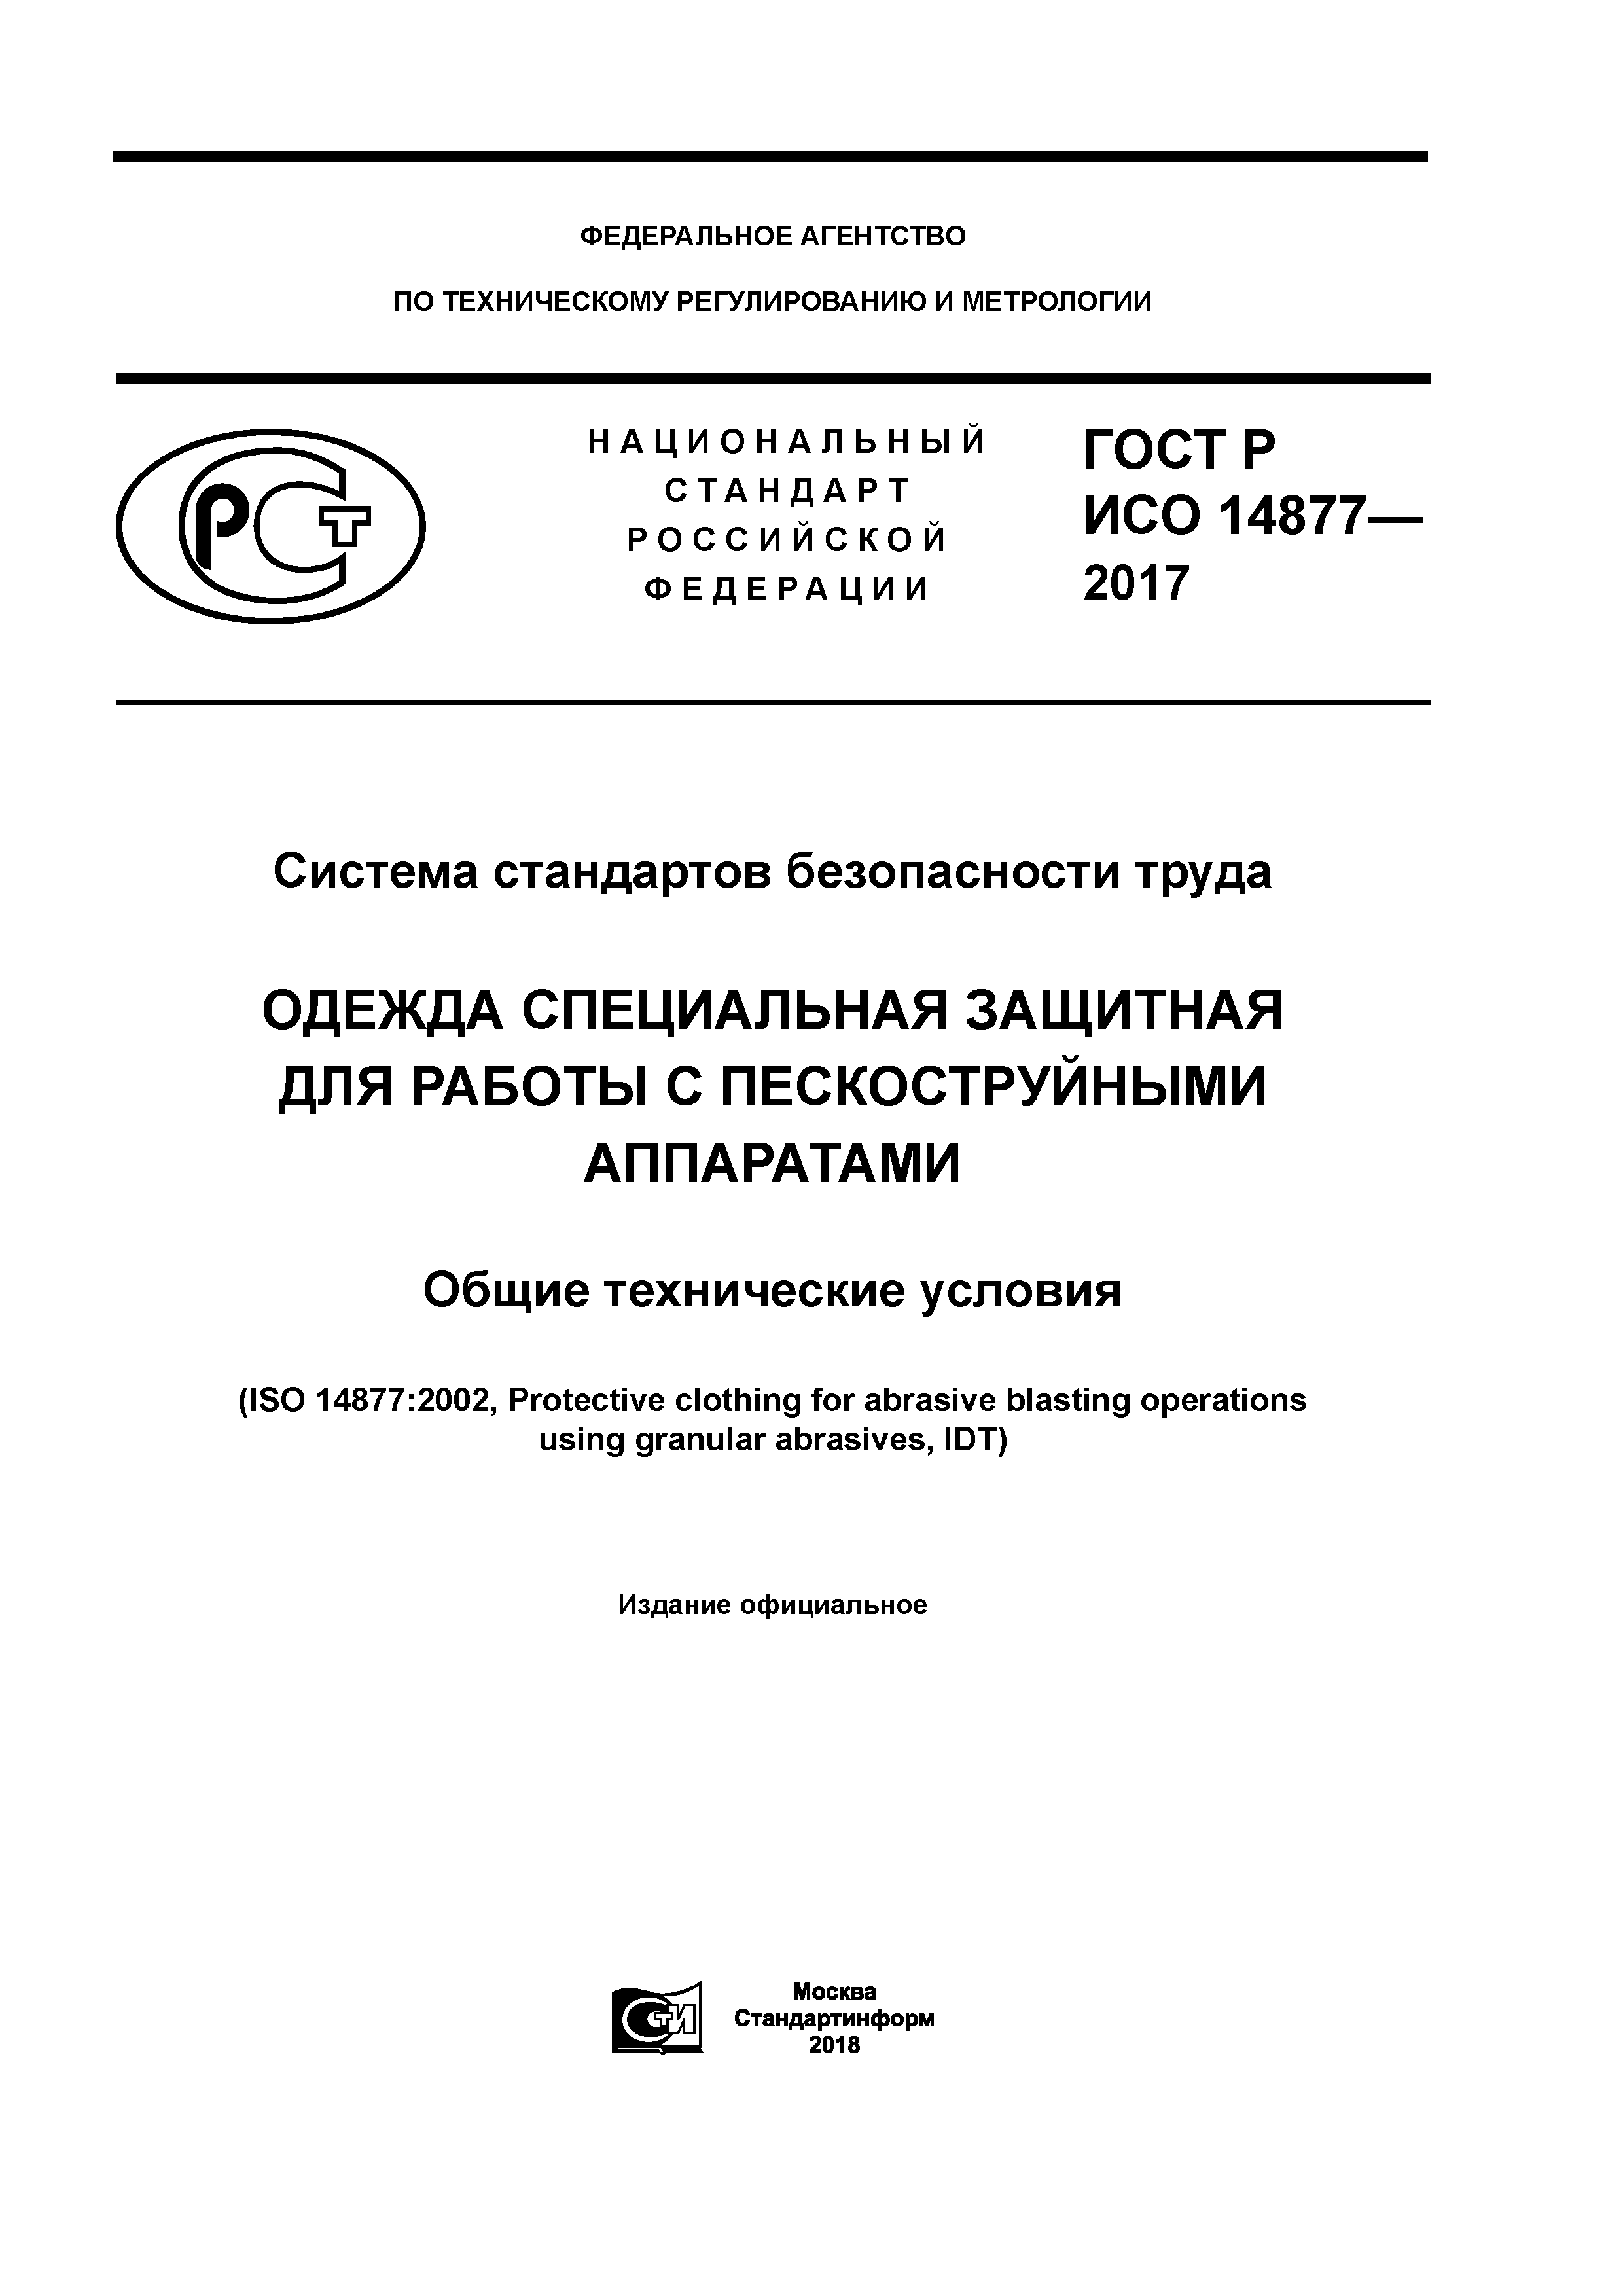 ГОСТ Р ИСО 14877-2017